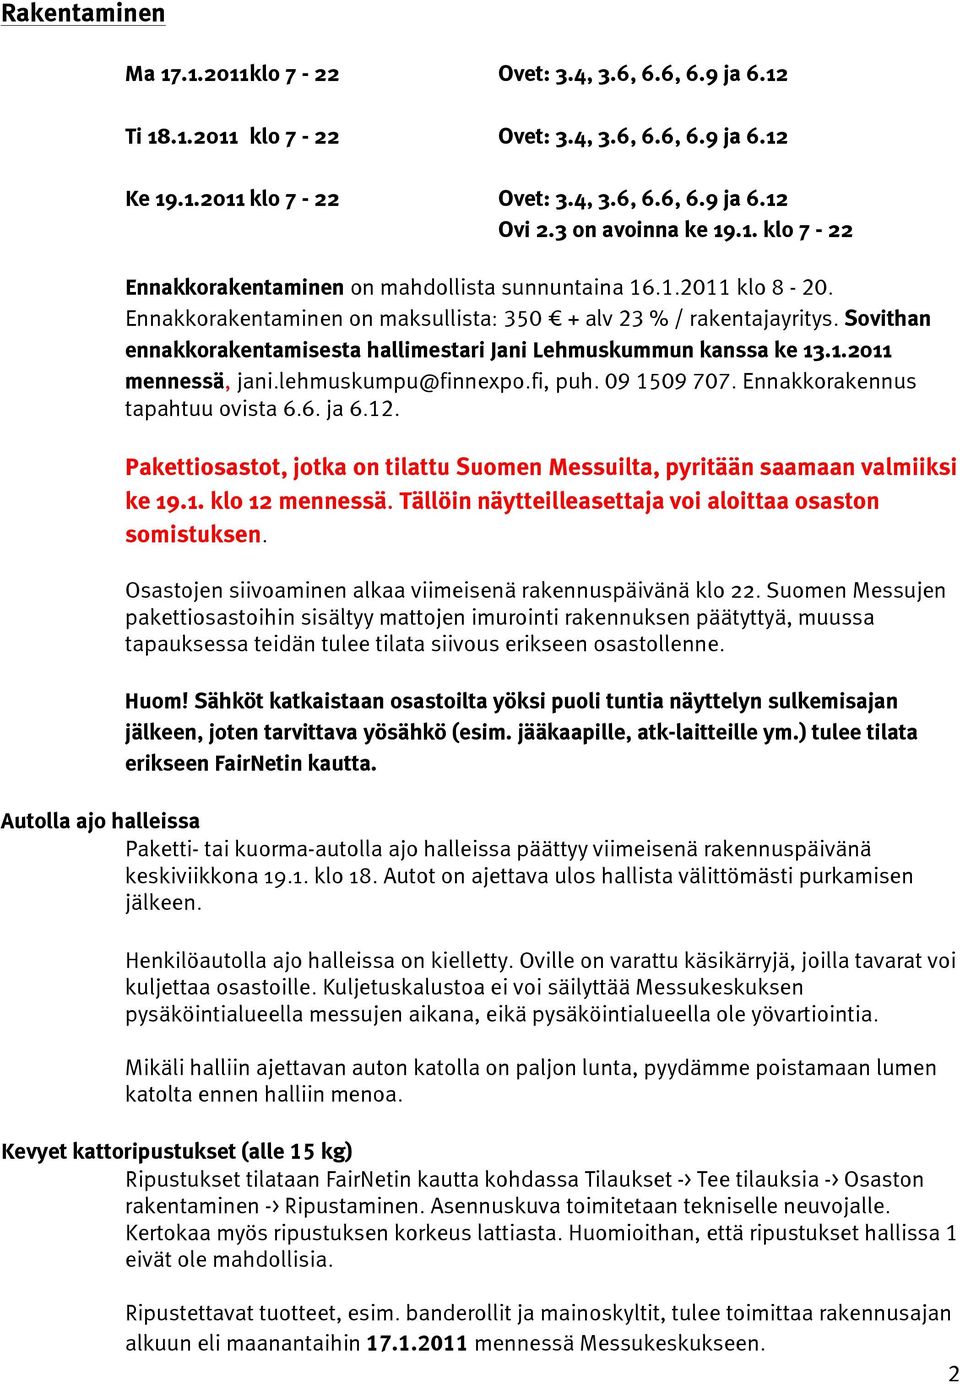 Sovithan ennakkorakentamisesta hallimestari Jani Lehmuskummun kanssa ke 13.1.2011 mennessä, jani.lehmuskumpu@finnexpo.fi, puh. 09 1509 707. Ennakkorakennus tapahtuu ovista 6.6. ja 6.12.